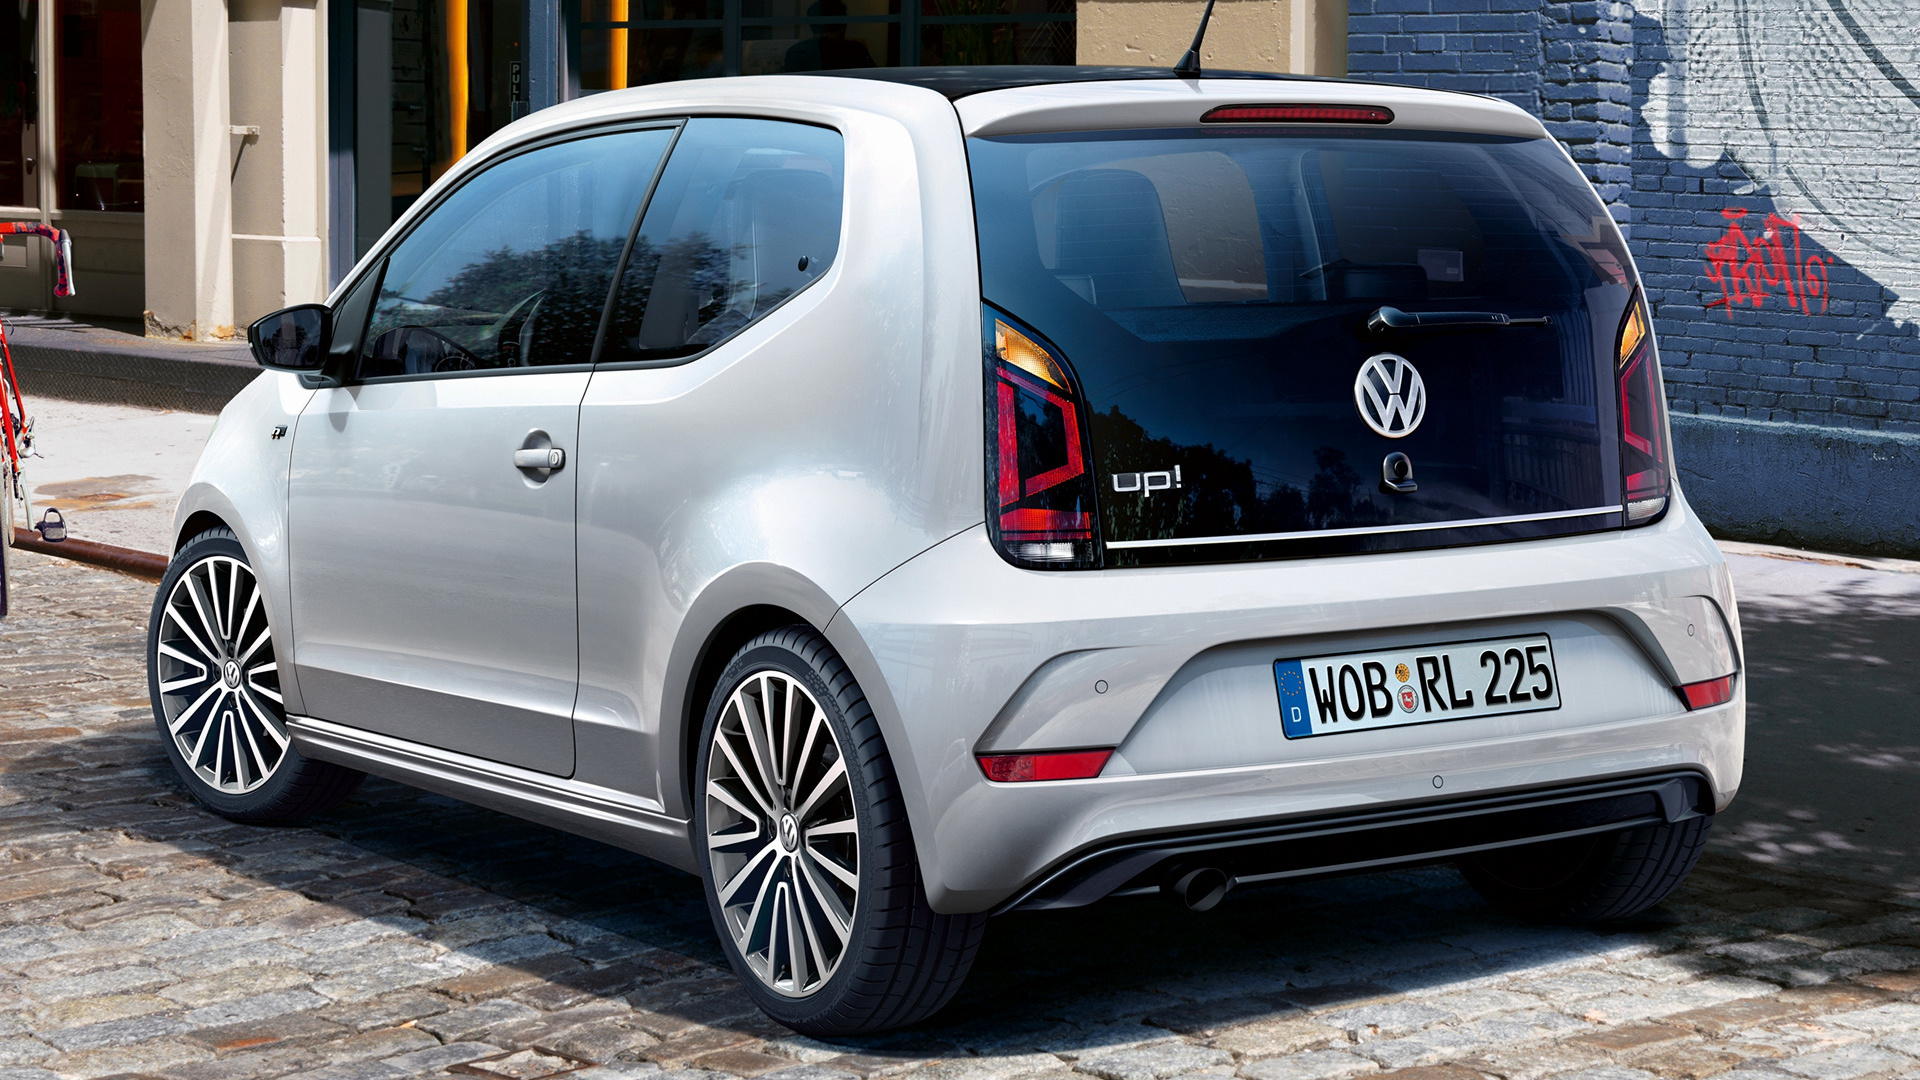 Vehicles Volkswagen up! HD Wallpaper | Background Image